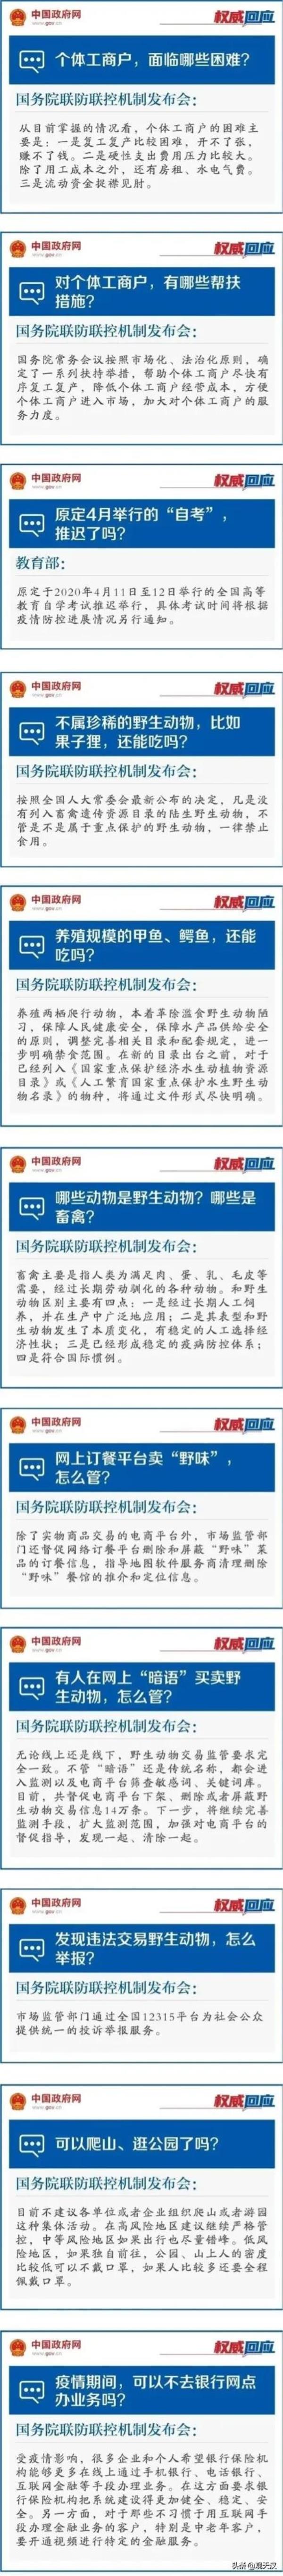 汉中职业技术学院自考网上报名_汉中自考报名时间